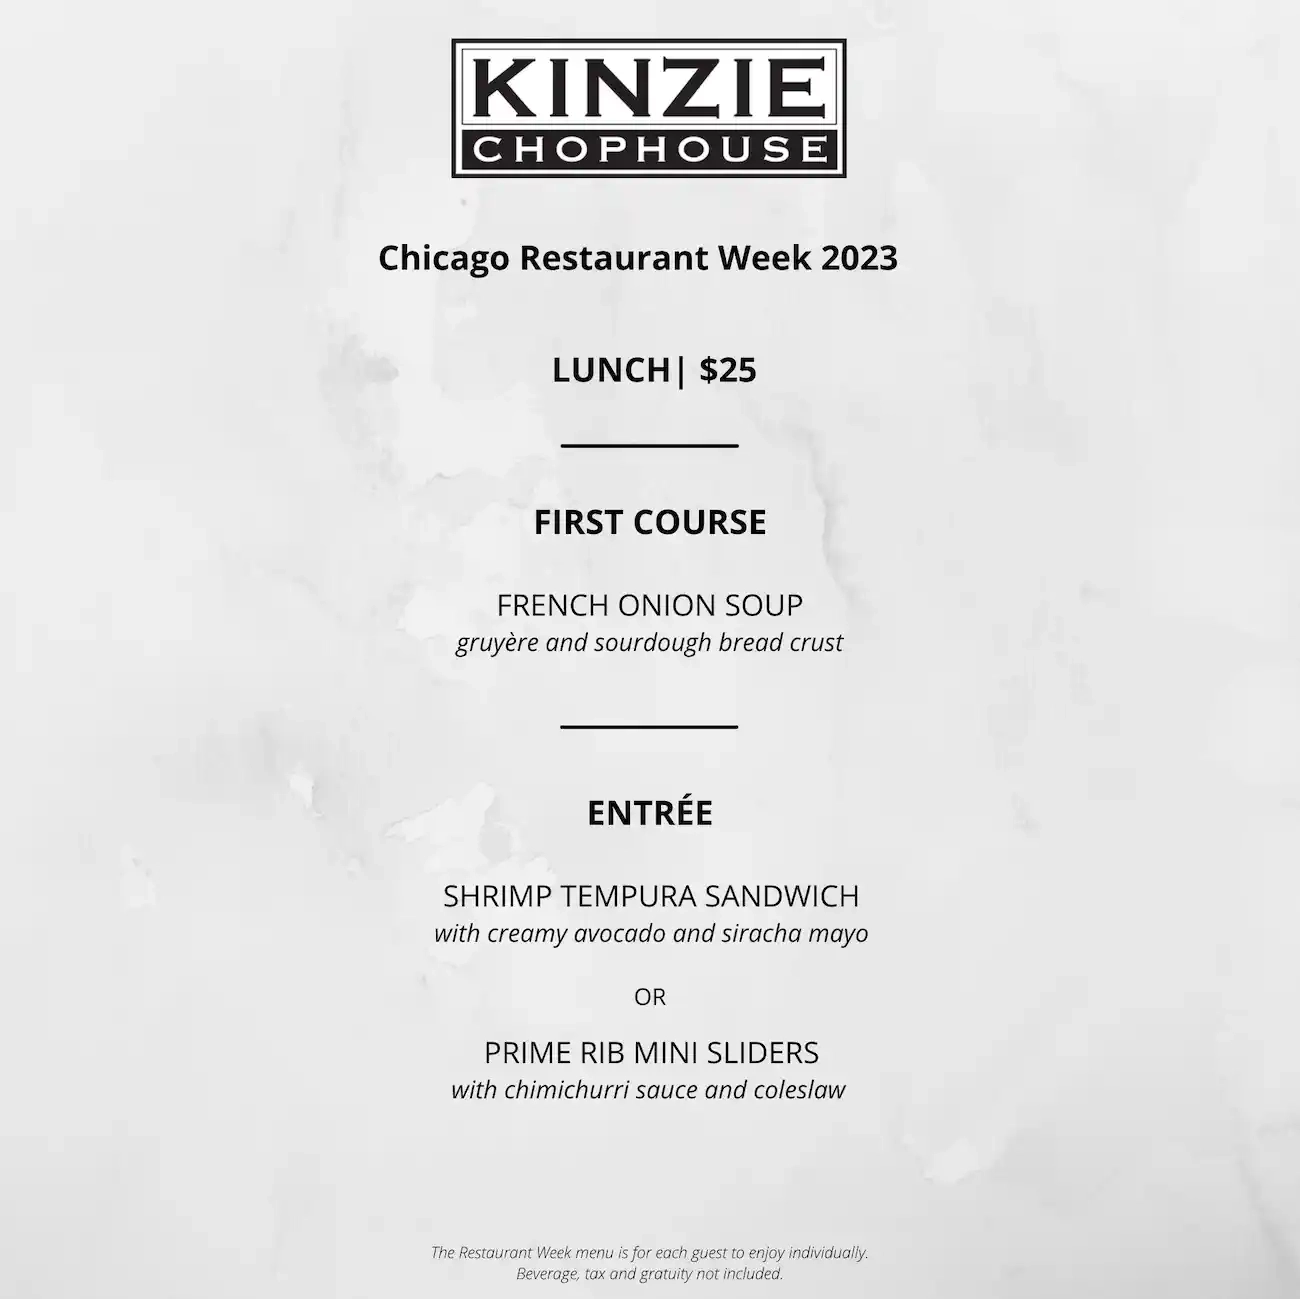 Chicago Restaurant Week 2023 Menu Kinzie Chophouse Lunch